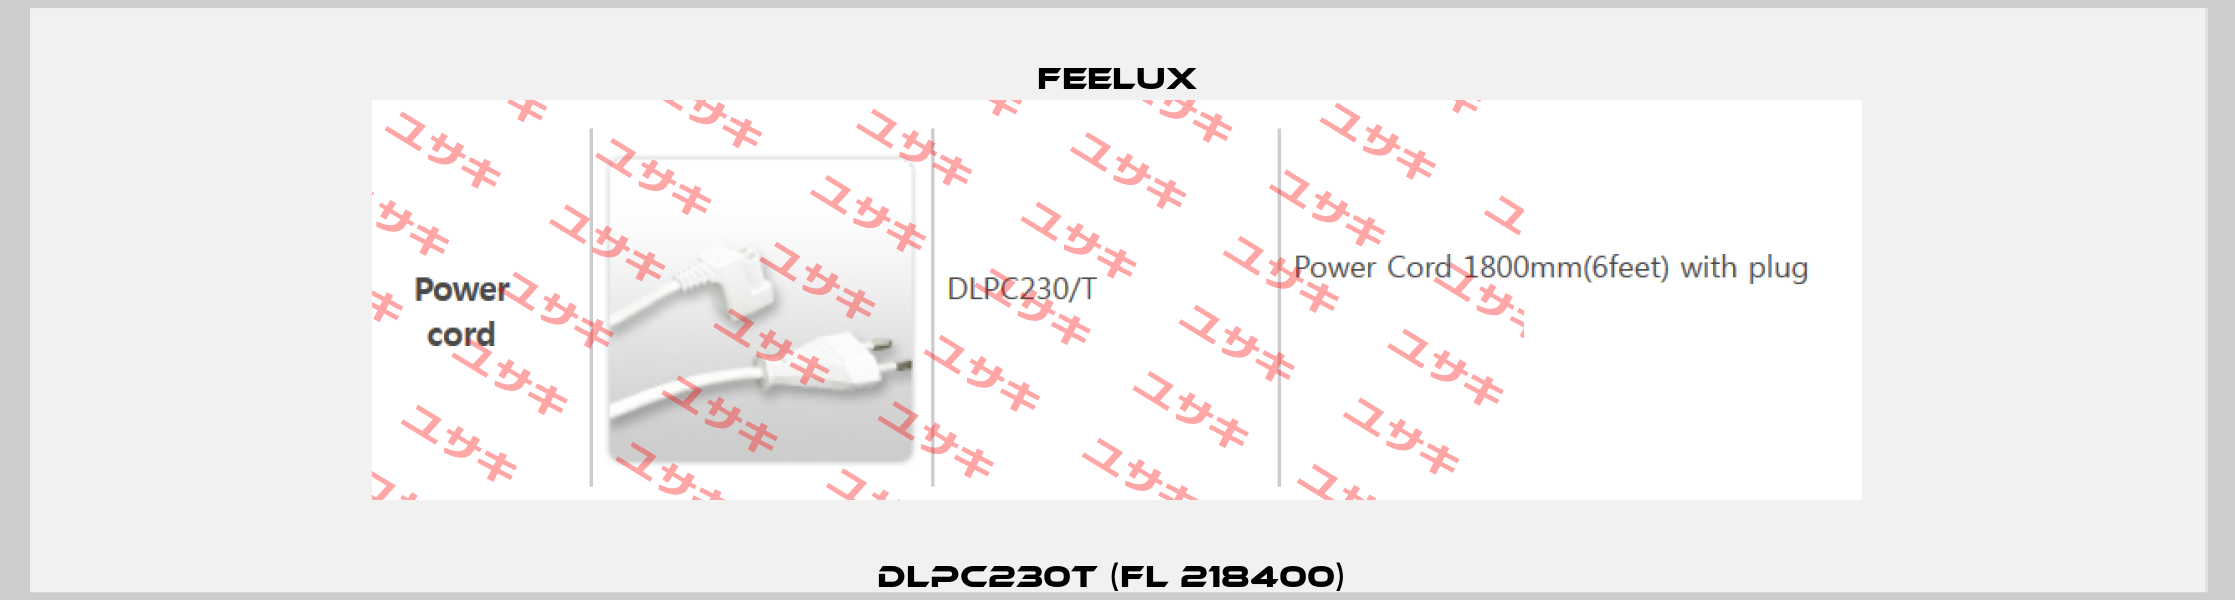 DLPC230T (FL 218400)  Feelux